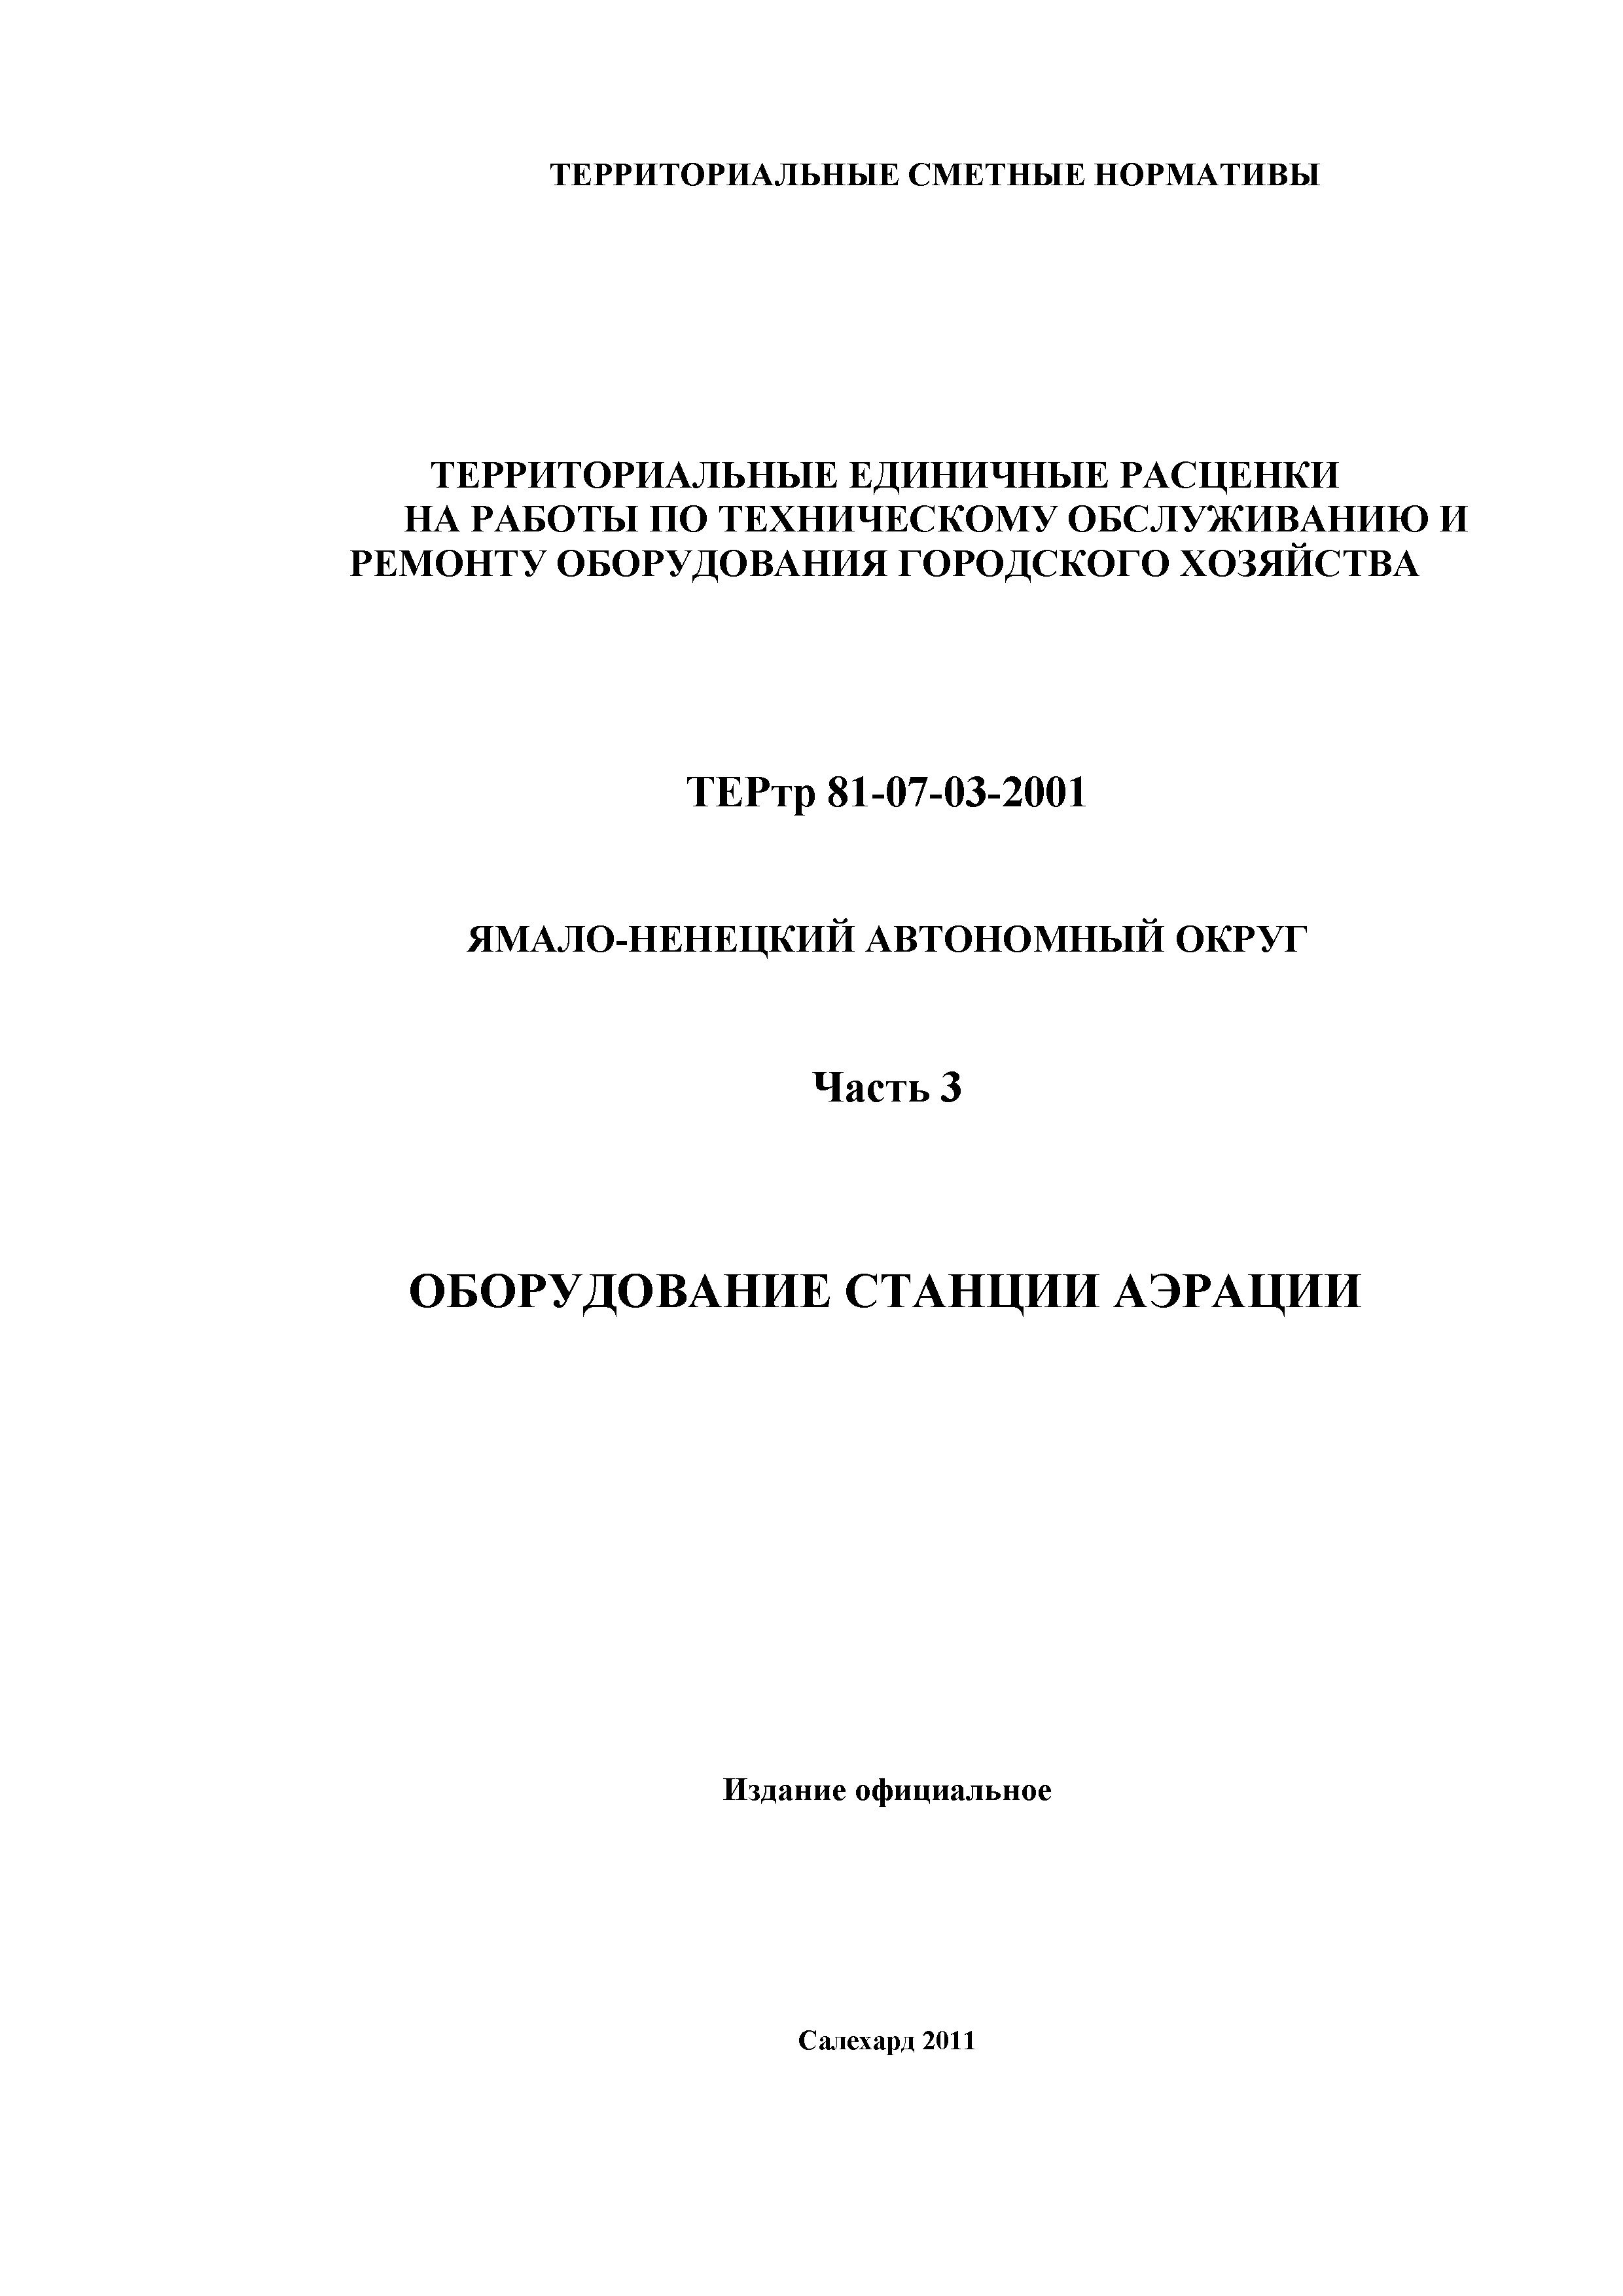 ТЕРтр Ямало-Ненецкий автономный округ 03-2001